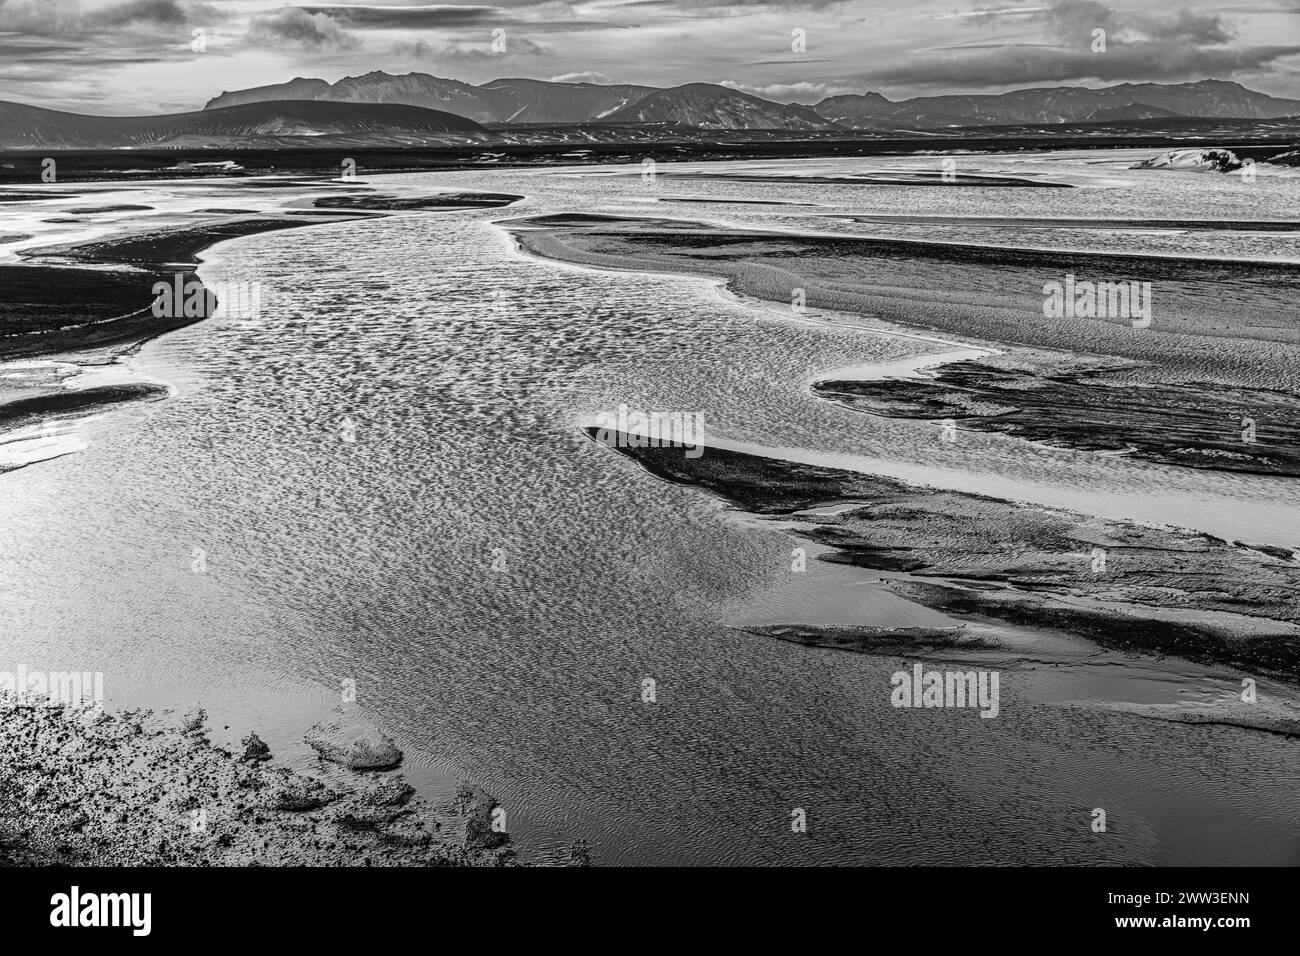 Paysage fluvial envahi par la végétation, photographie en noir et blanc, réserve naturelle de Fjallabak, Sudurland, Islande Banque D'Images